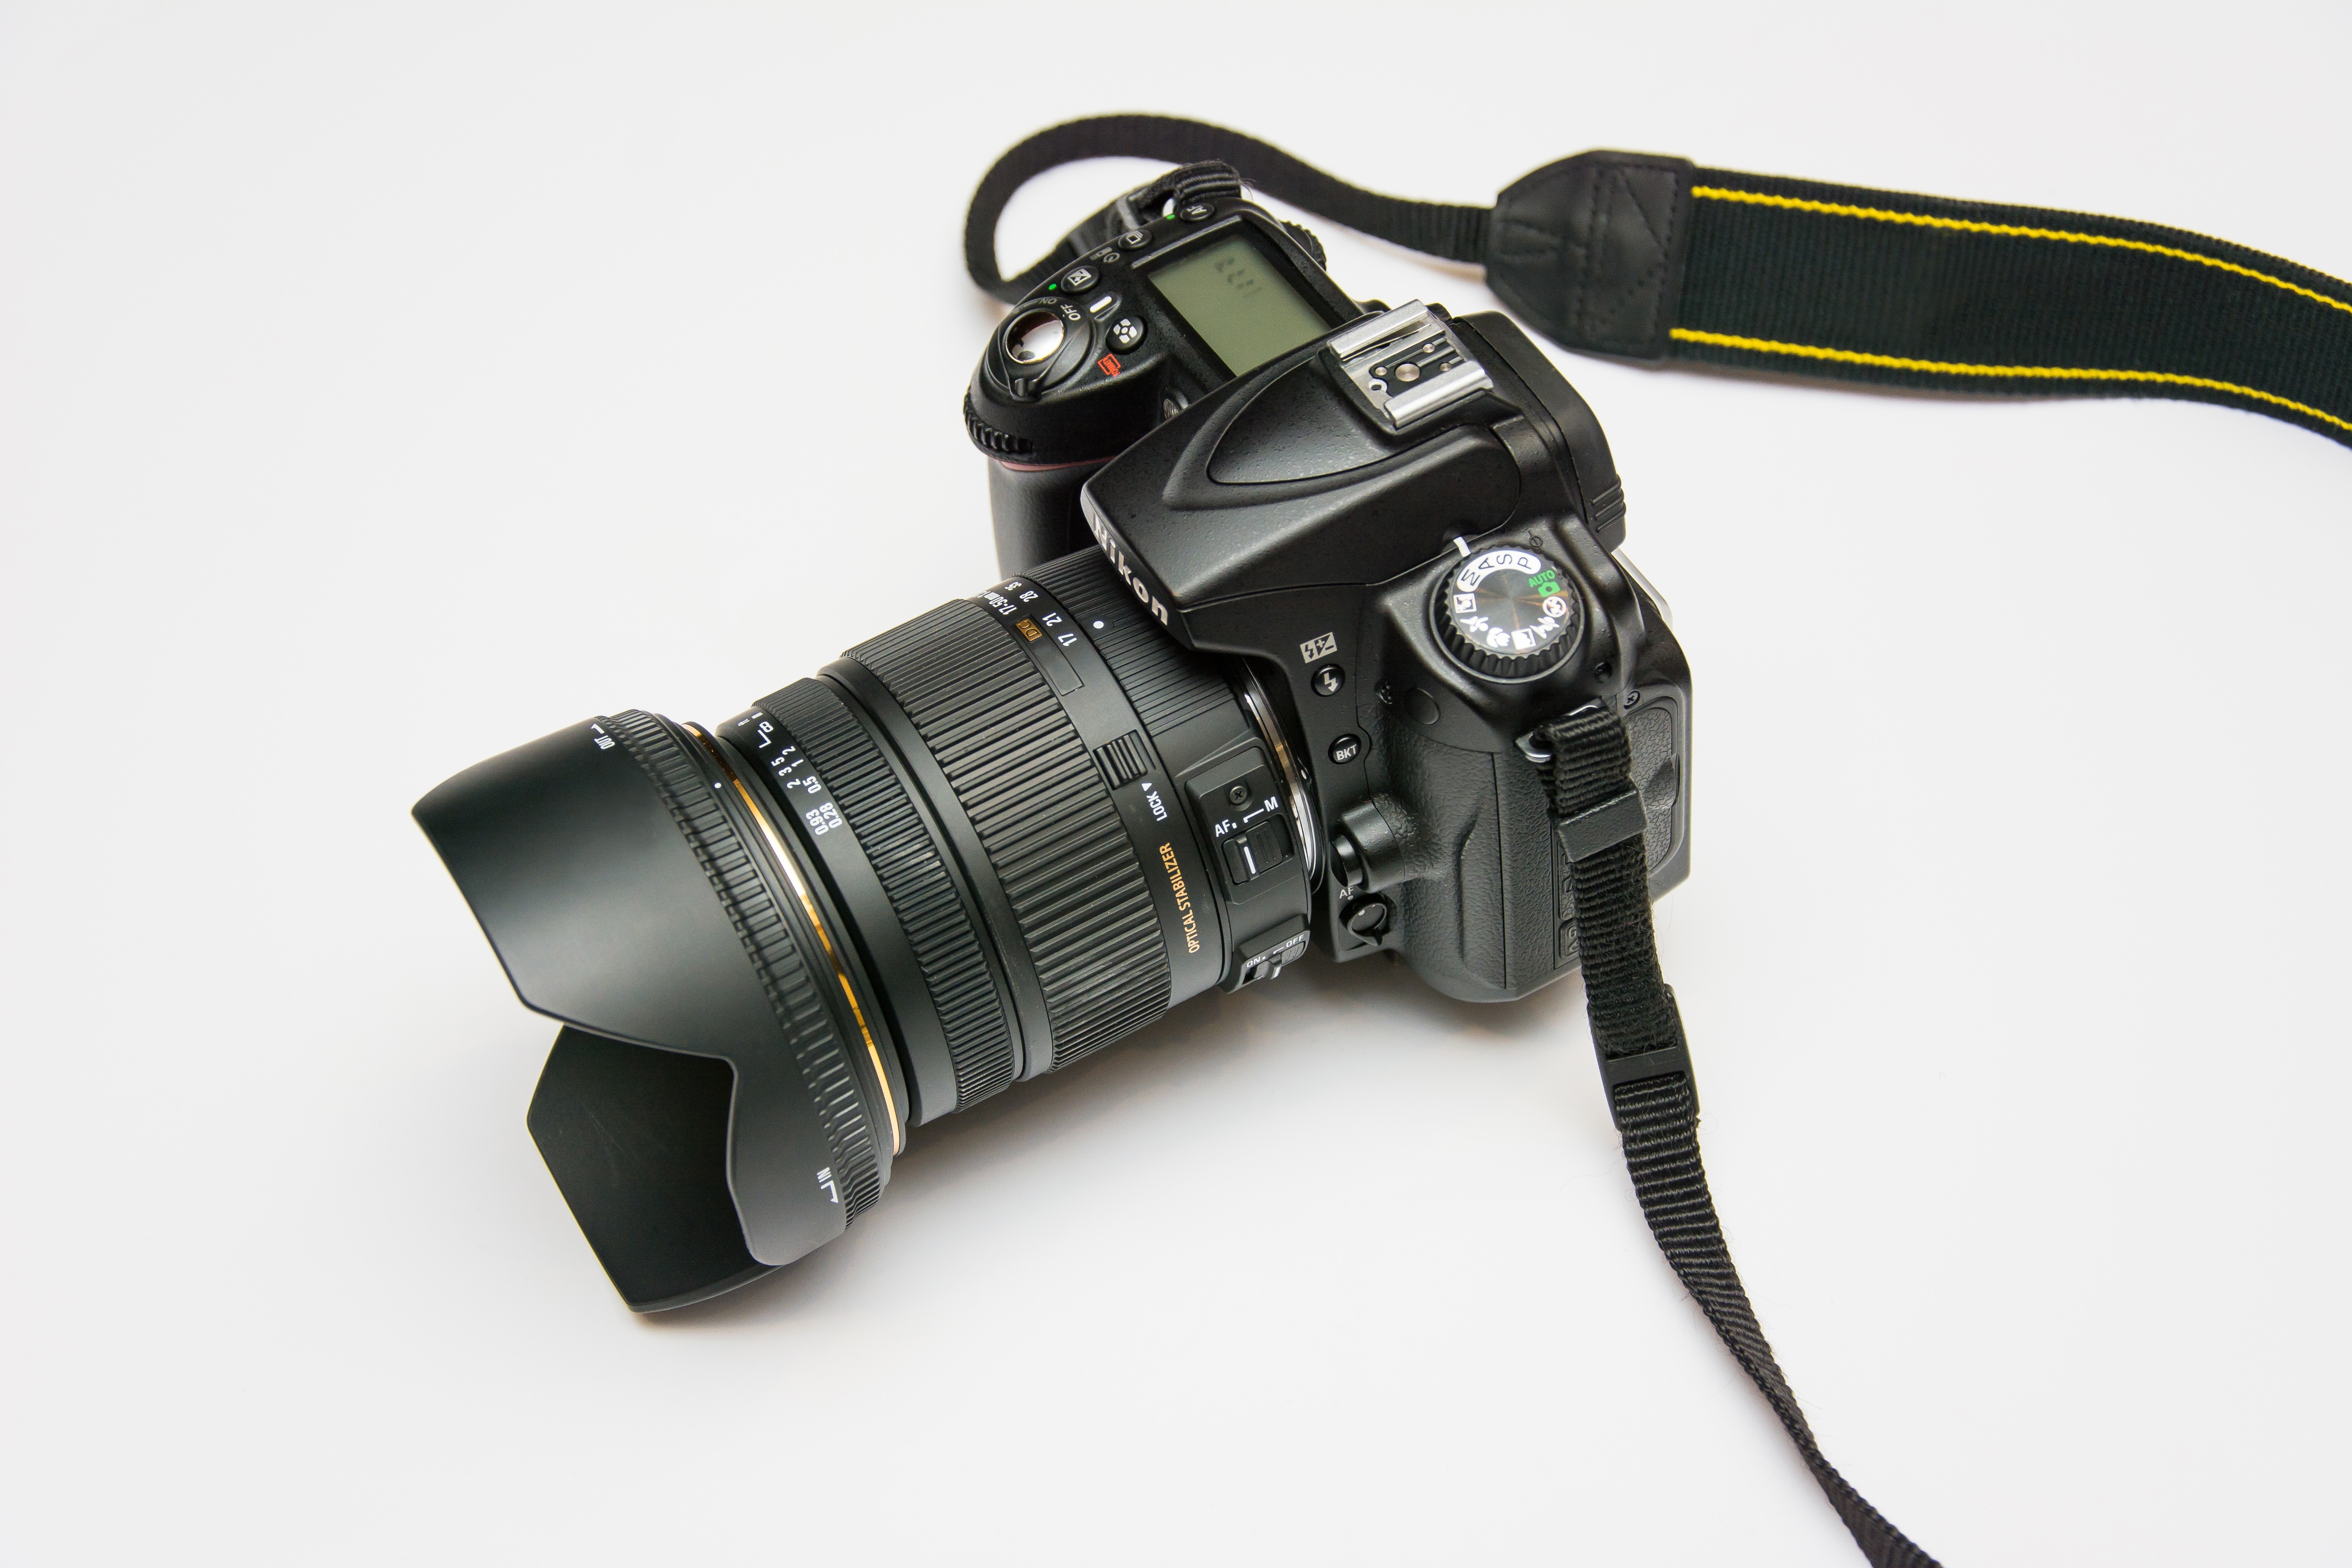 Pourquoi acheter un appareil photo à 4000 CHF/€ serait-il mieux que mon appareil actuel ?